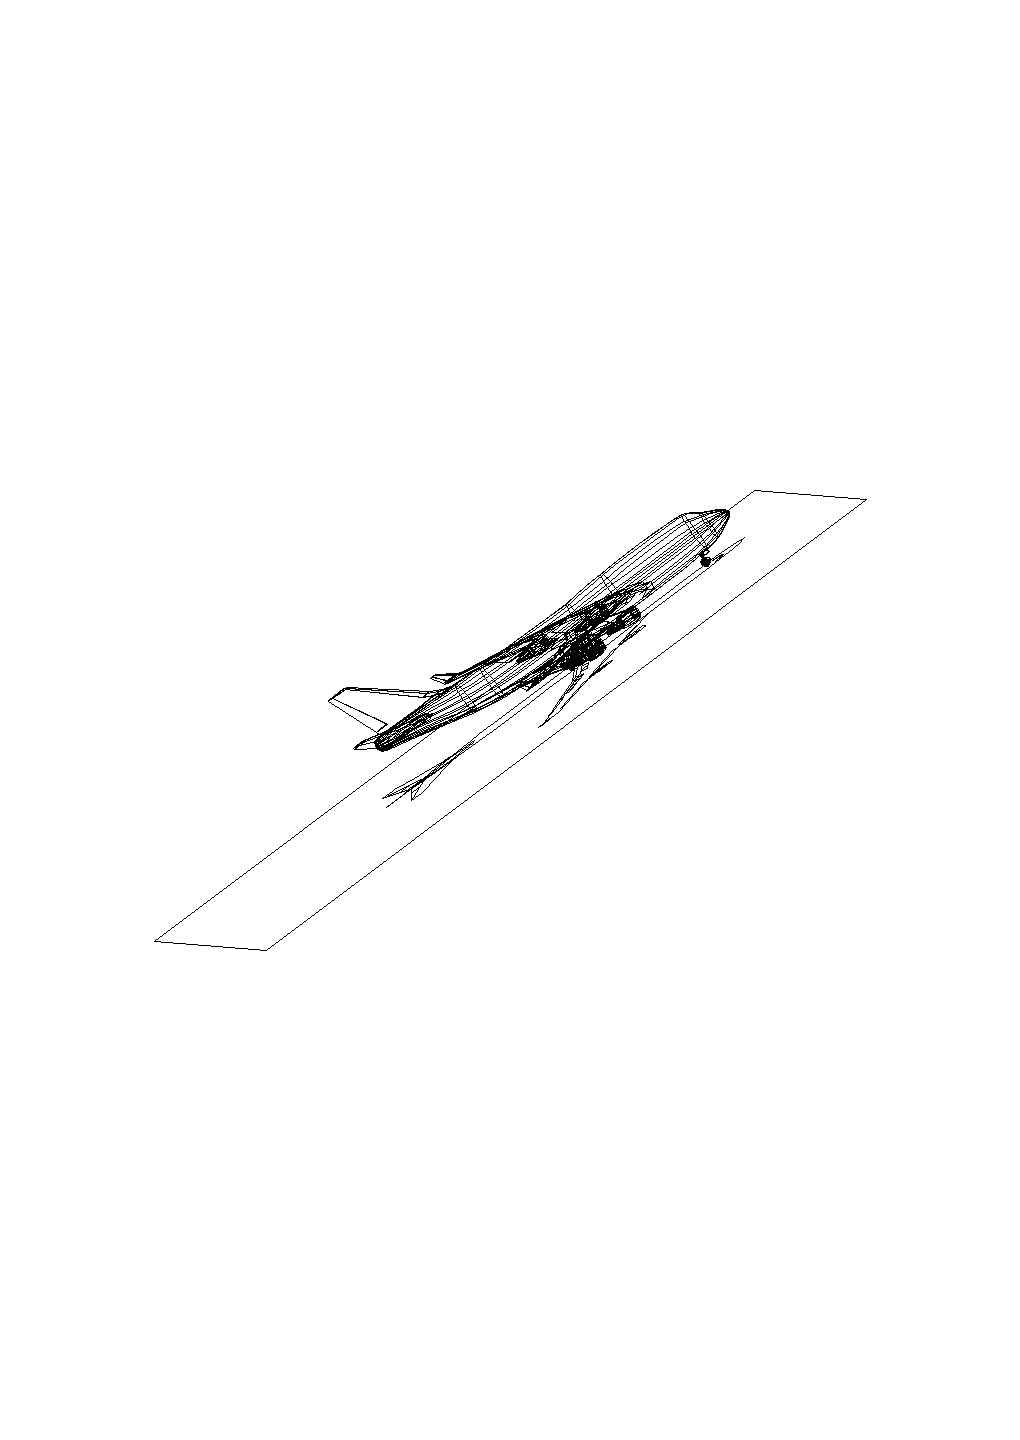 某飞机CAD节点完整详细设计图